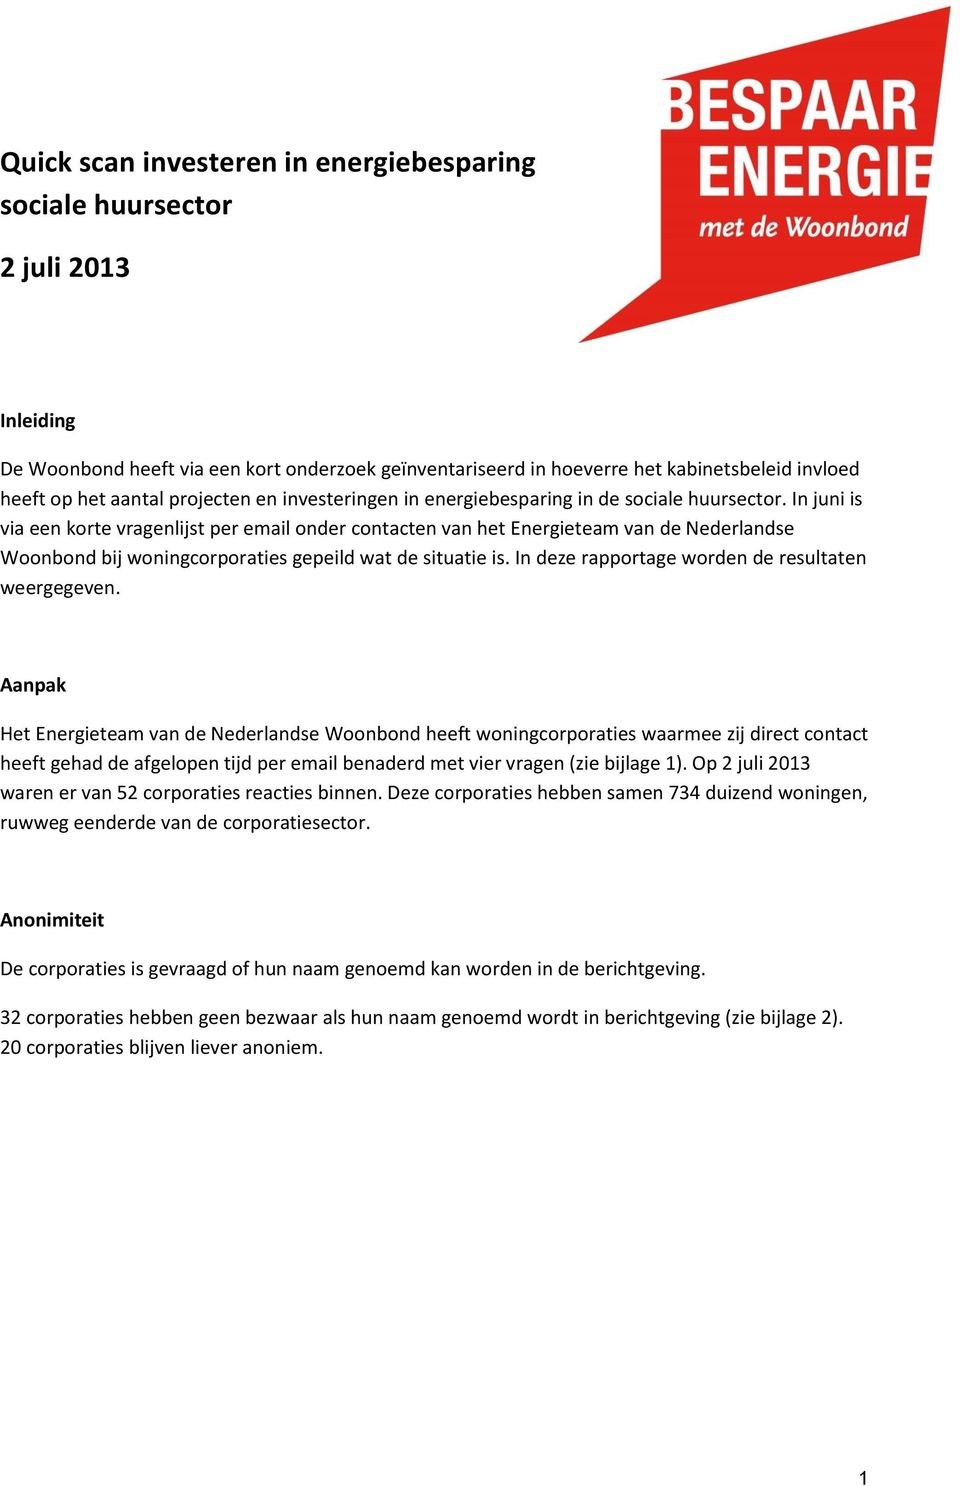 In juni is via een korte vragenlijst per email onder contacten van het Energieteam van de Nederlandse Woonbond bij woningcorporaties gepeild wat de situatie is.